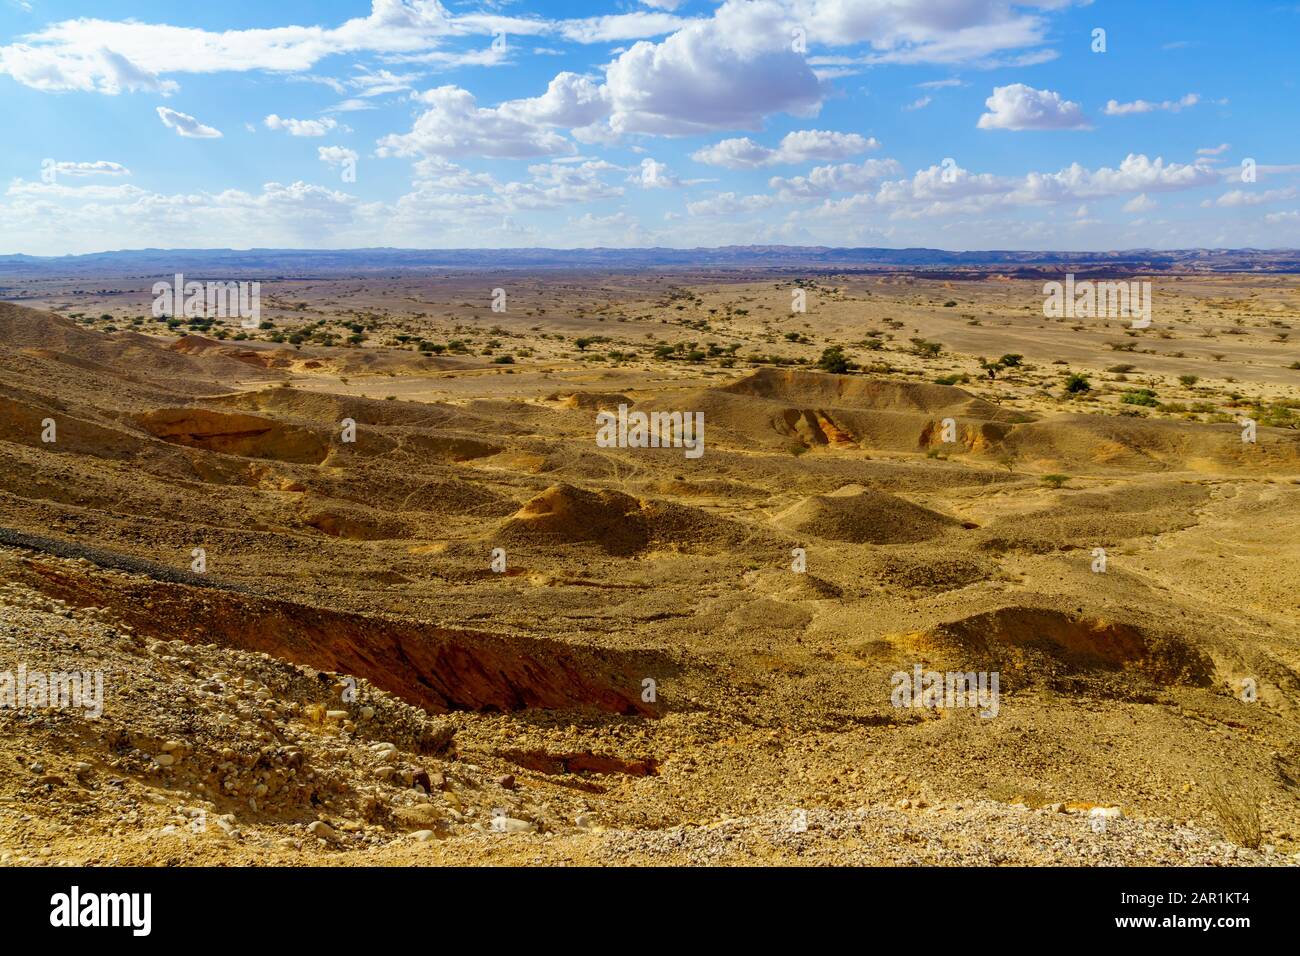 Paesaggio desertico nella Riserva Naturale di Sheizaf, il deserto di Arava, Israele meridionale Foto Stock